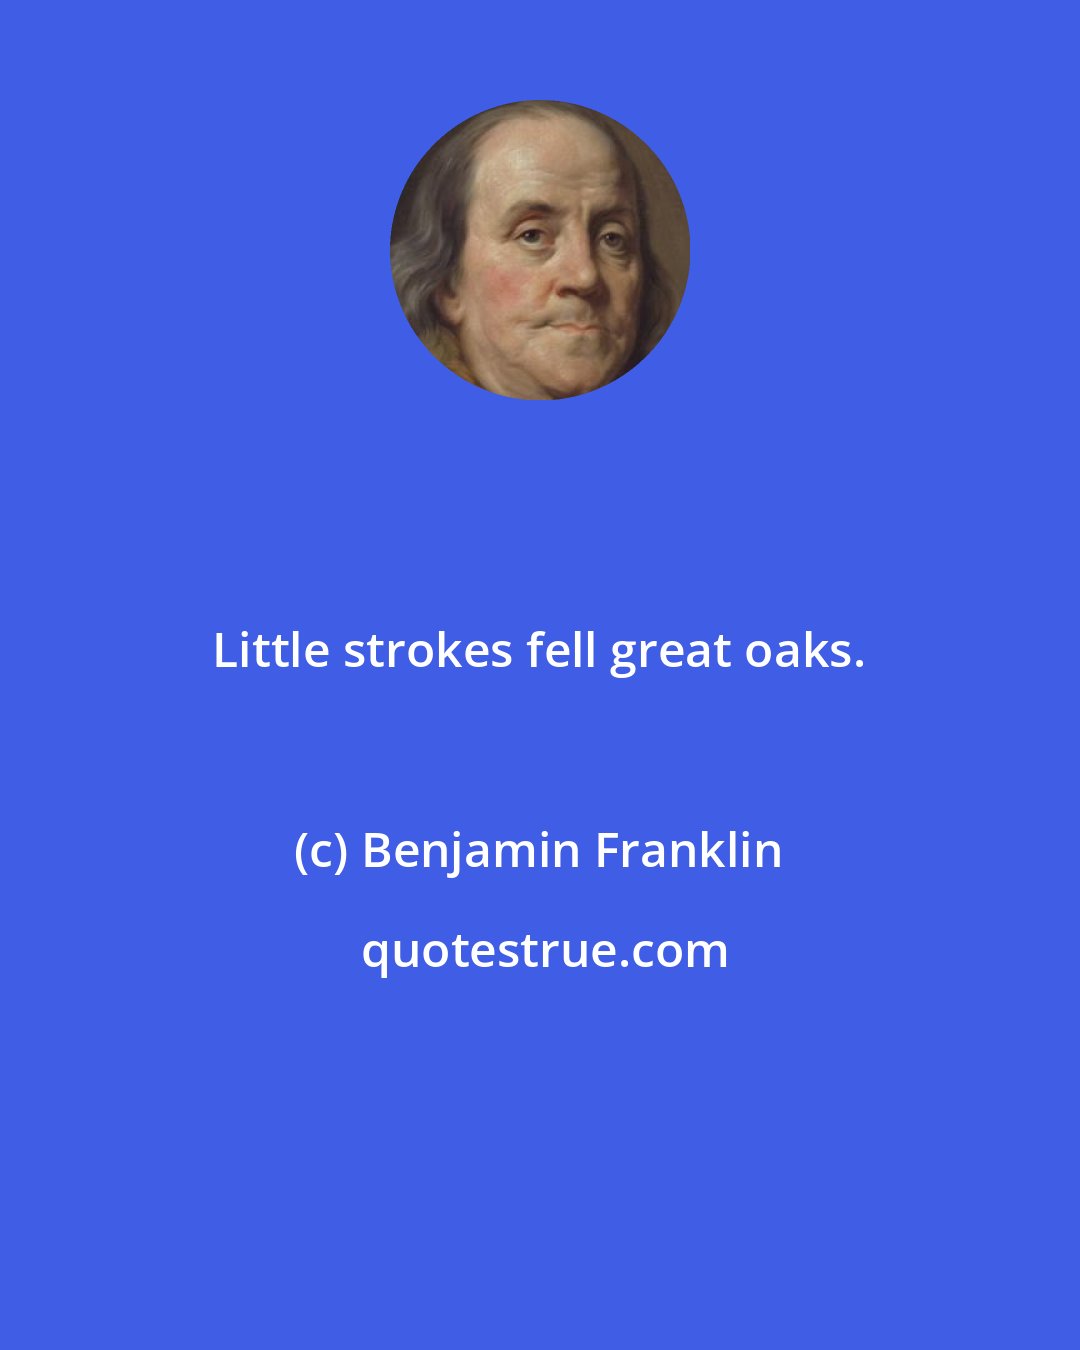 Benjamin Franklin: Little strokes fell great oaks.